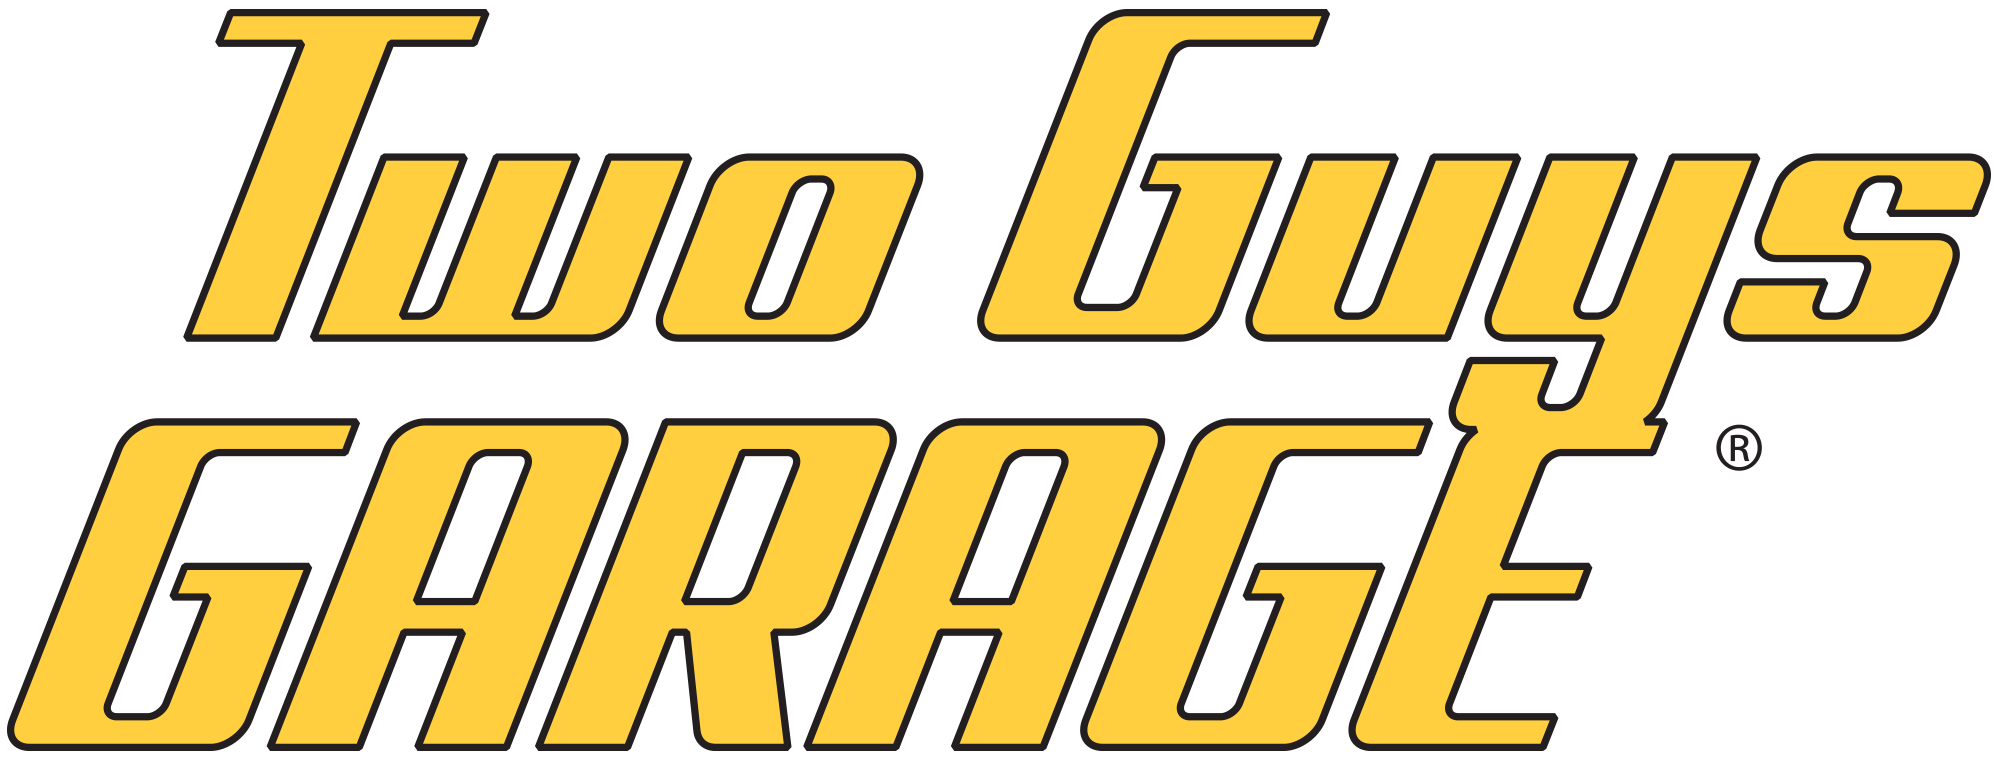 TwoGuysGarage_Logo_Large